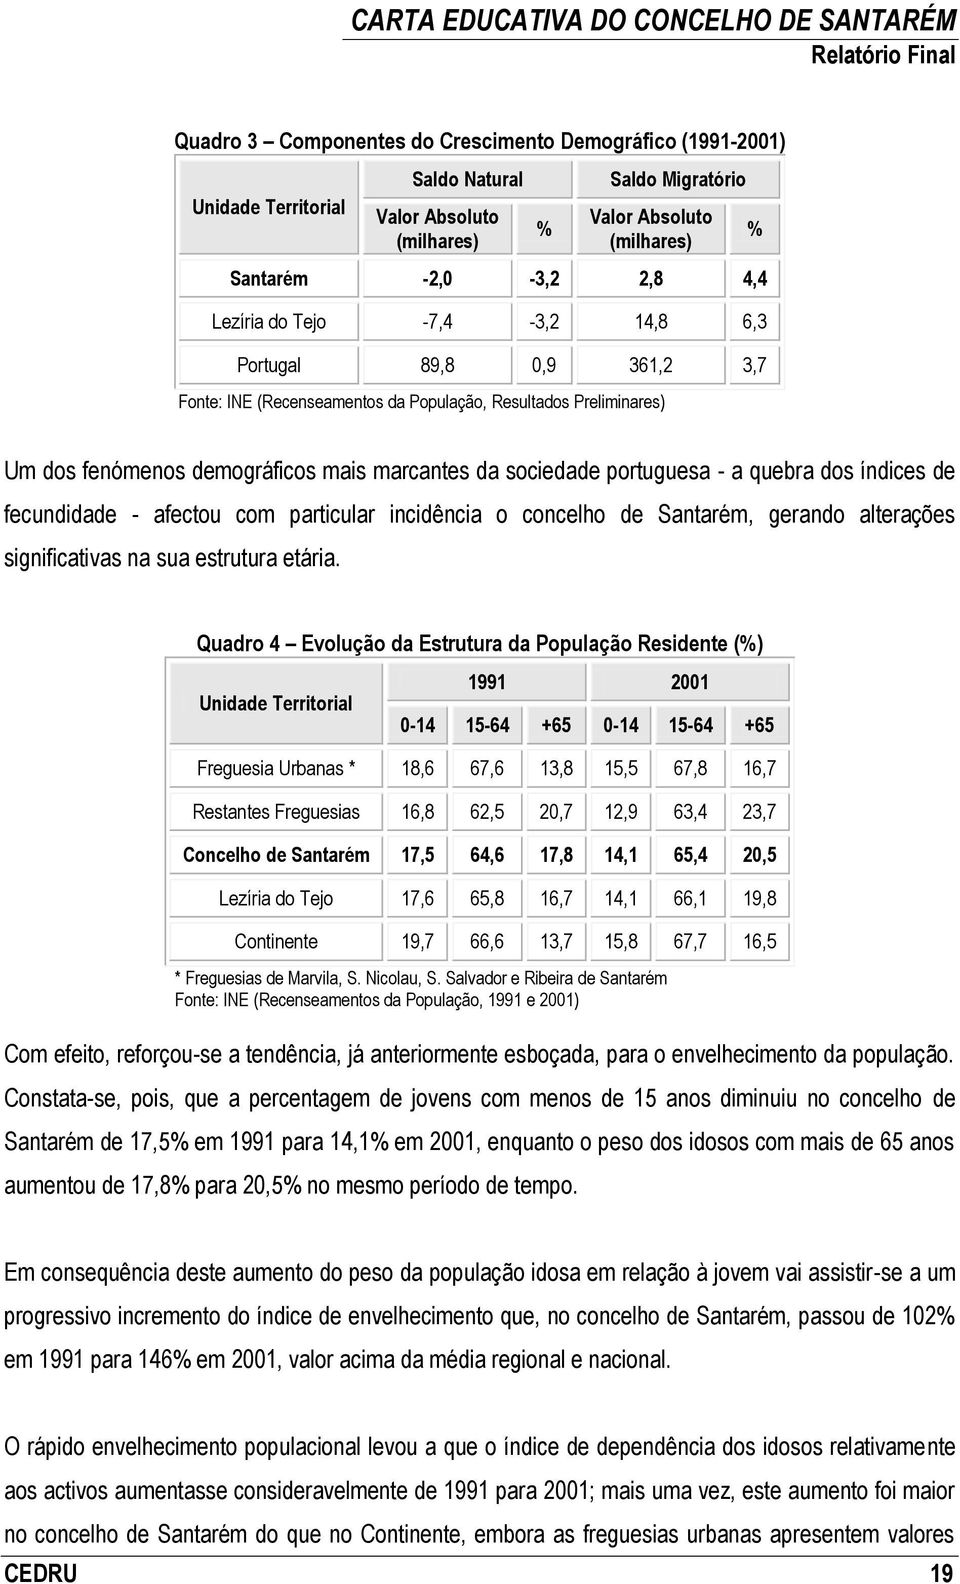 quebra dos índices de fecundidade - afectou com particular incidência o concelho de Santarém, gerando alterações significativas na sua estrutura etária.